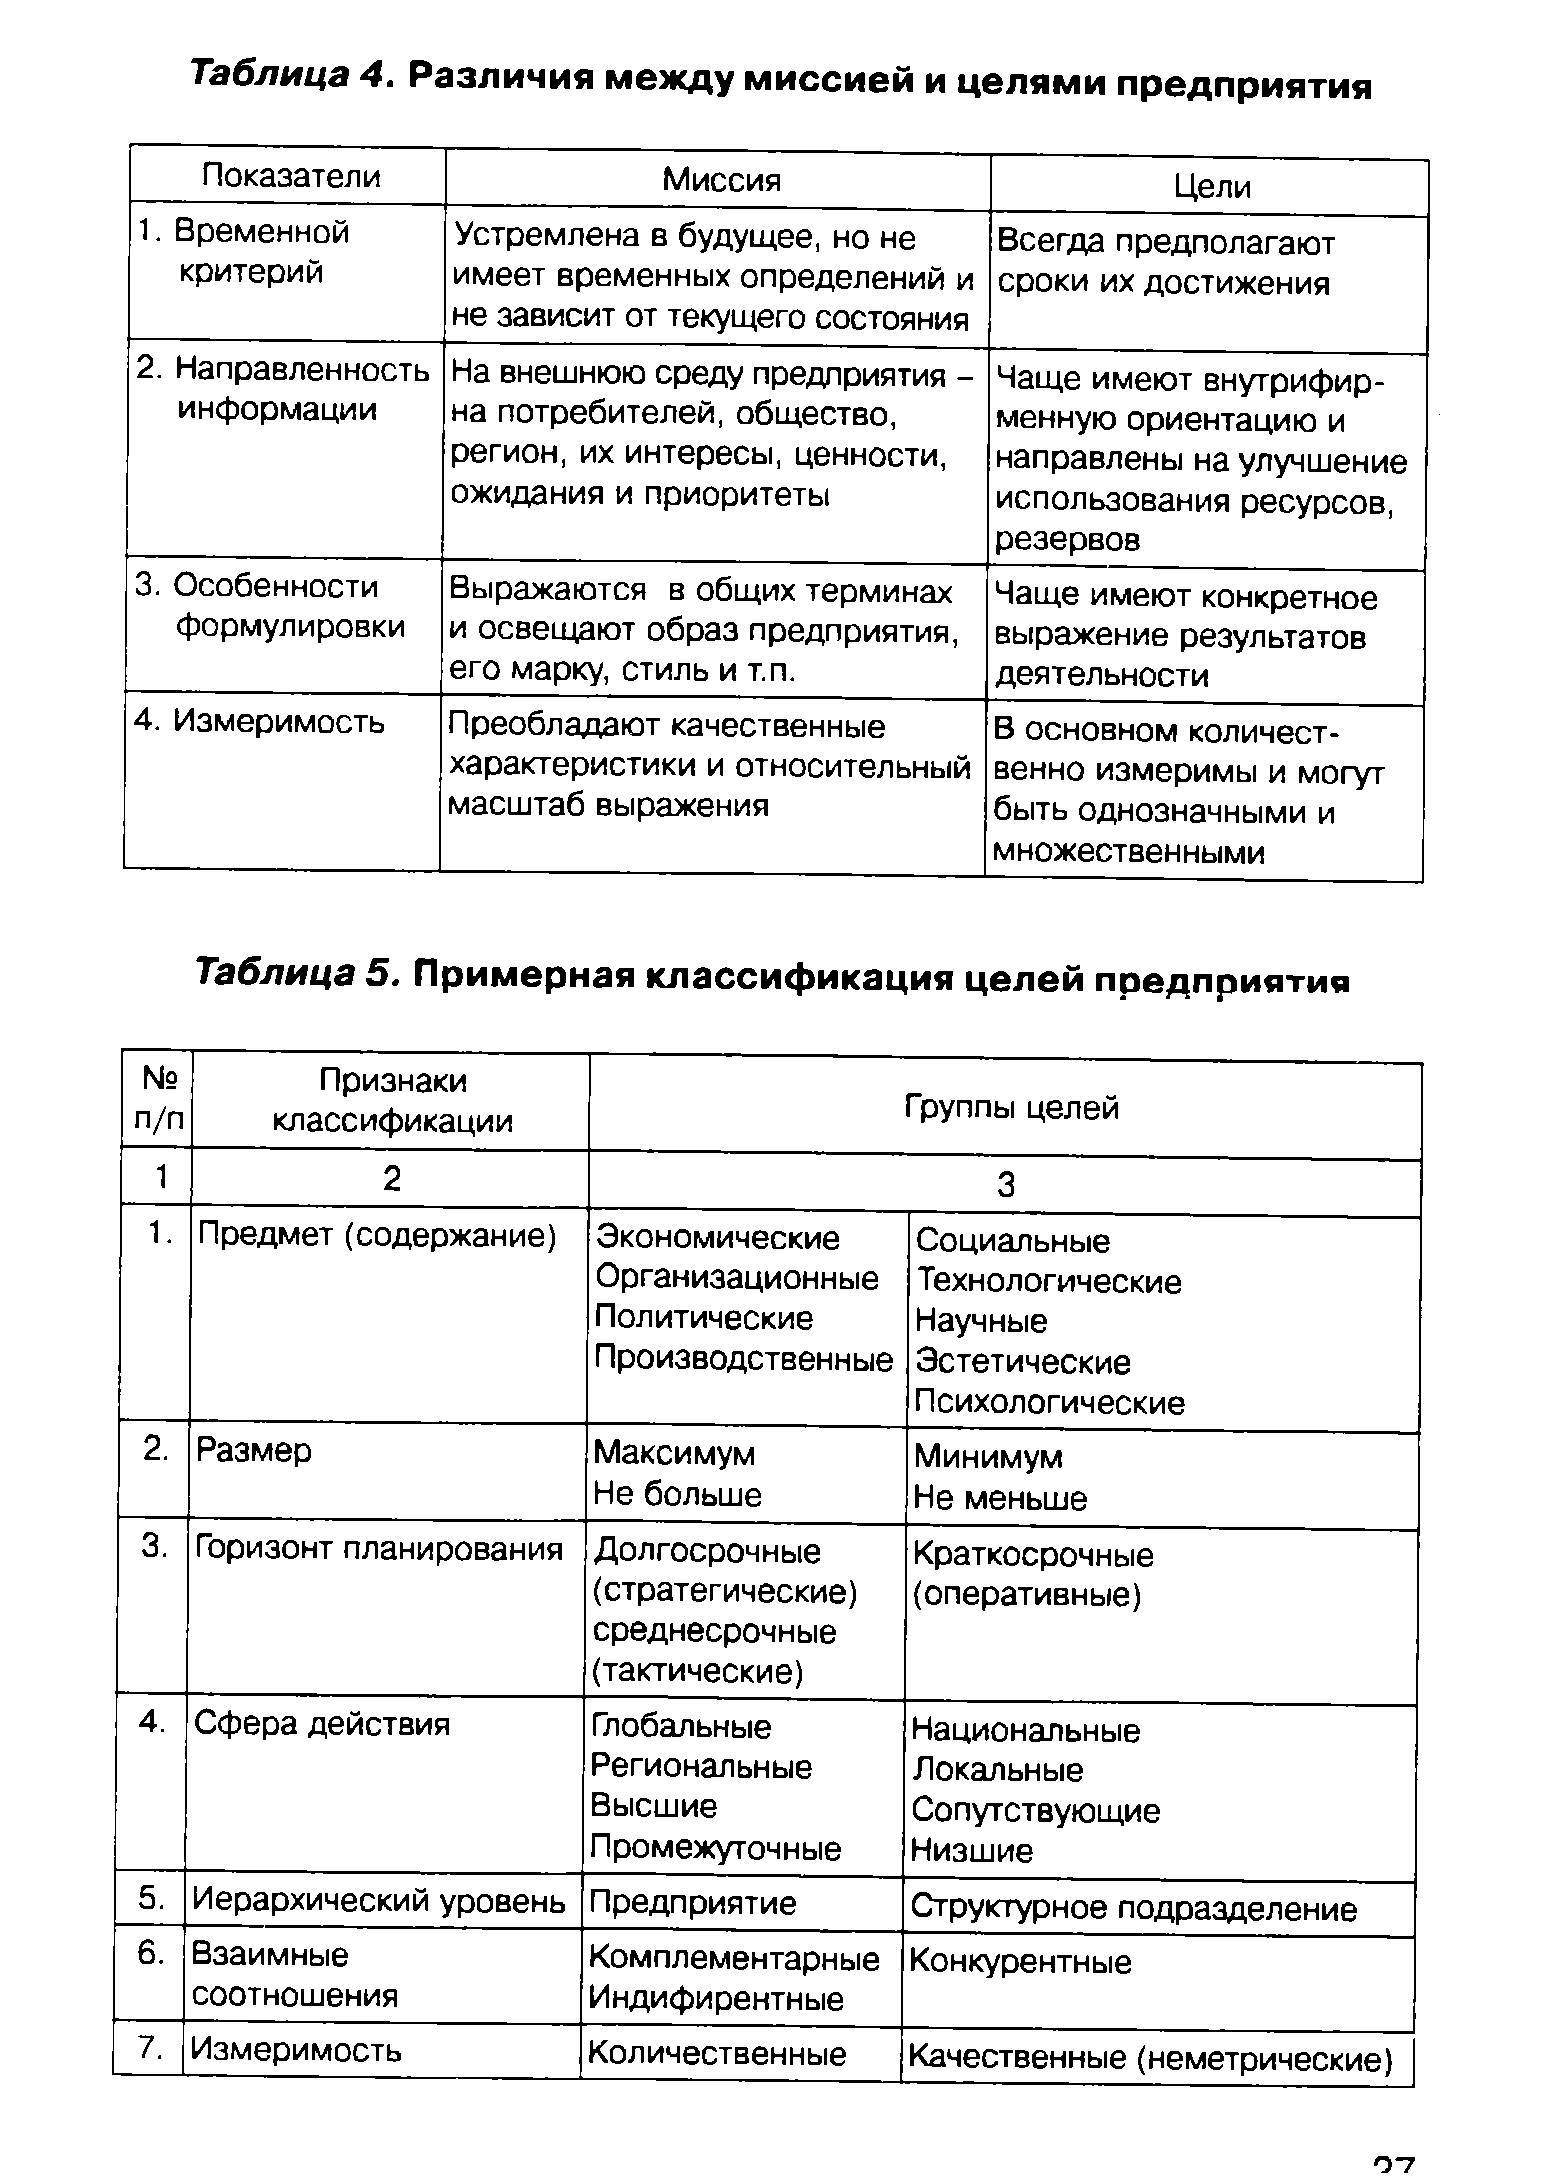 Таблица 5. Примерная классификация целей предприятия
